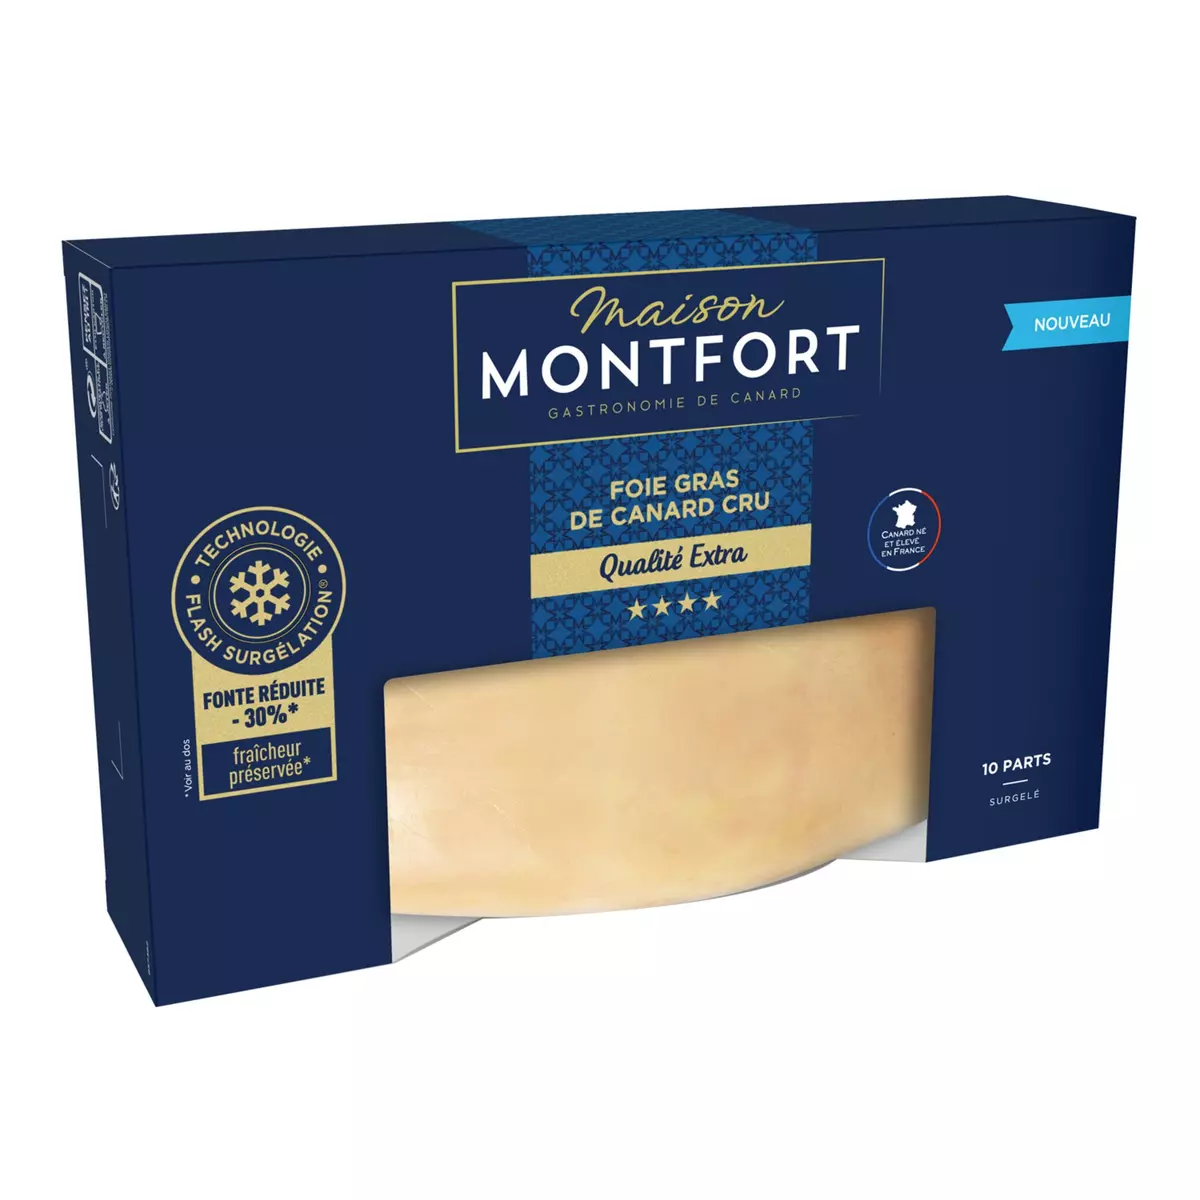 MAISON MONTFORT Foie gras de canard cru surgelé 10 parts 440g